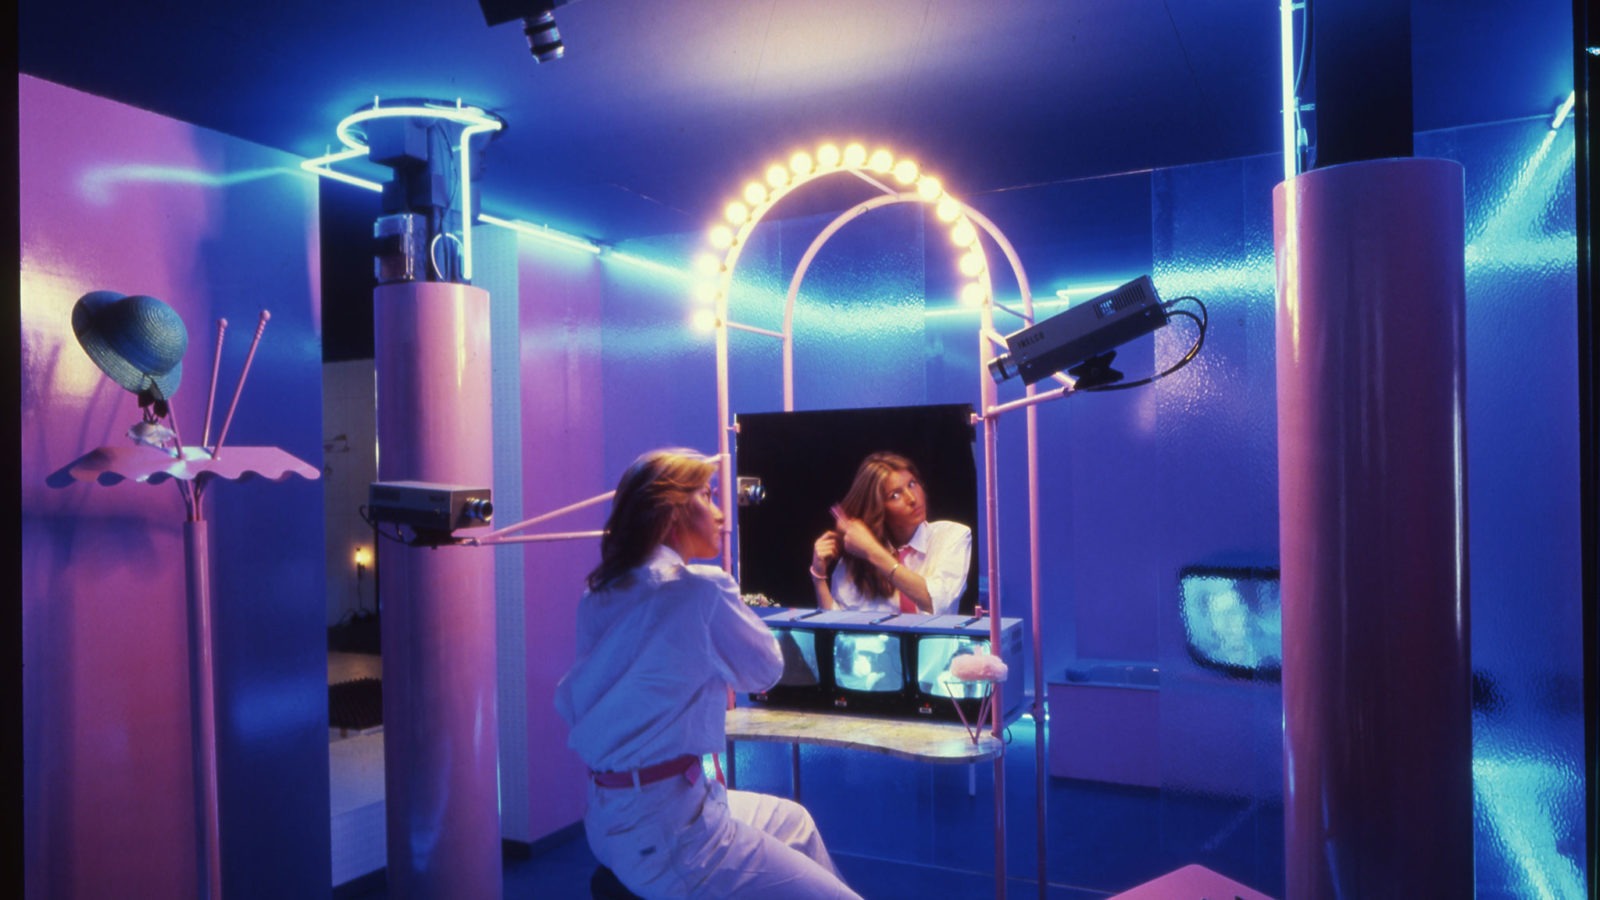 Eine sich die Haare kämmende und in einen Spiegel guckende Frau in einem Raum, der mit Neonlicht und auf sie gerichteten Kameras lila-blau und schummrig beleuchtet ist.